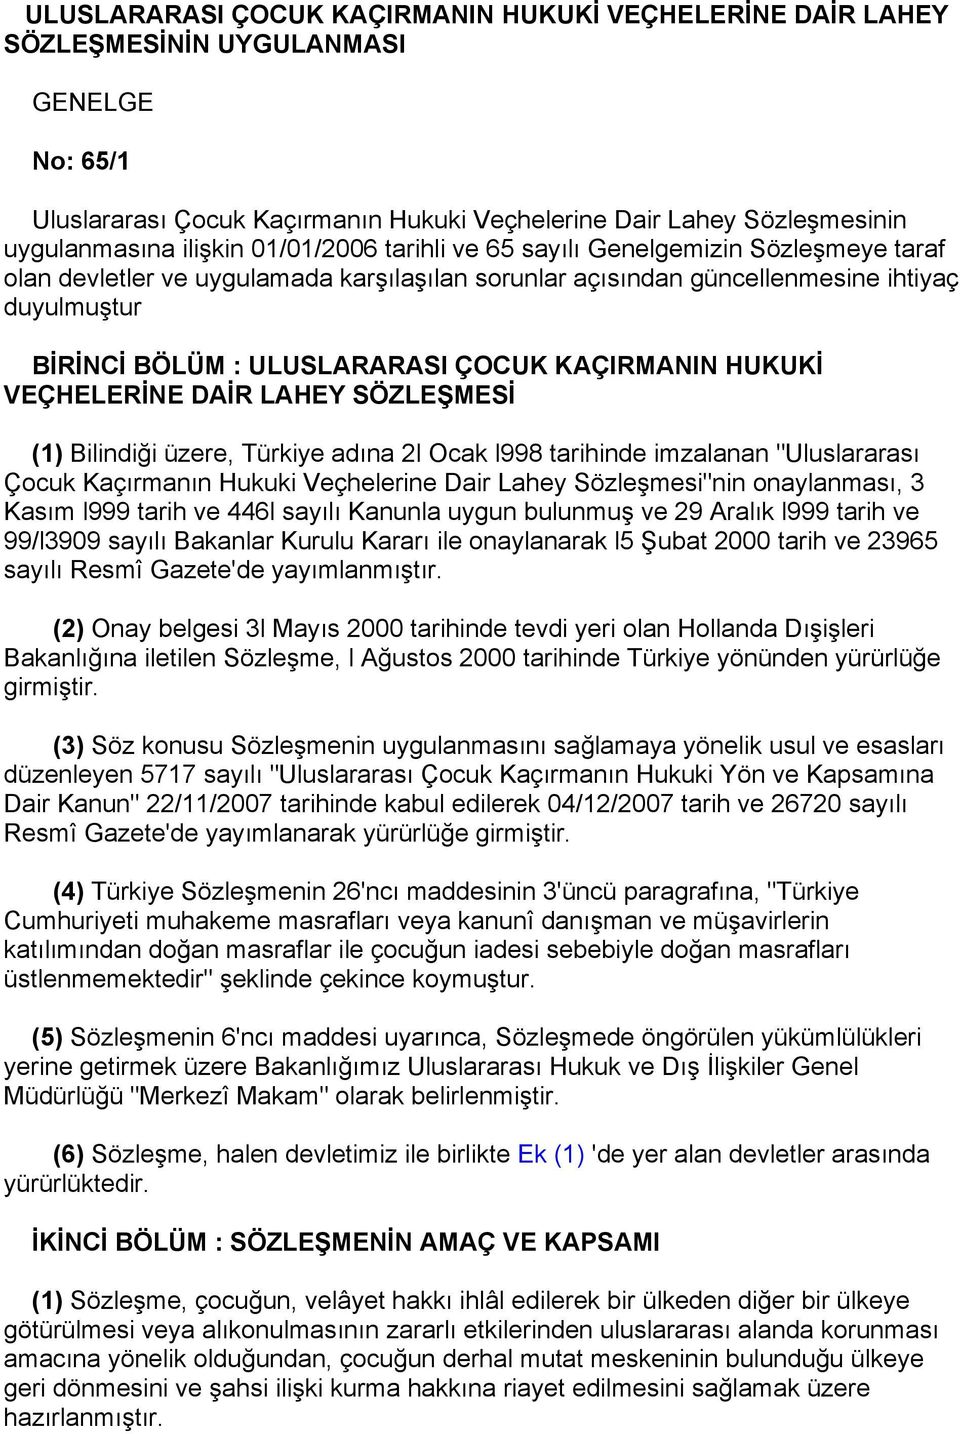 KAÇIRMANIN HUKUKİ VEÇHELERİNE DAİR LAHEY SÖZLEŞMESİ (1) Bilindiği üzere, Türkiye adına 2l Ocak l998 tarihinde imzalanan "Uluslararası Çocuk Kaçırmanın Hukuki Veçhelerine Dair Lahey Sözleşmesi"nin